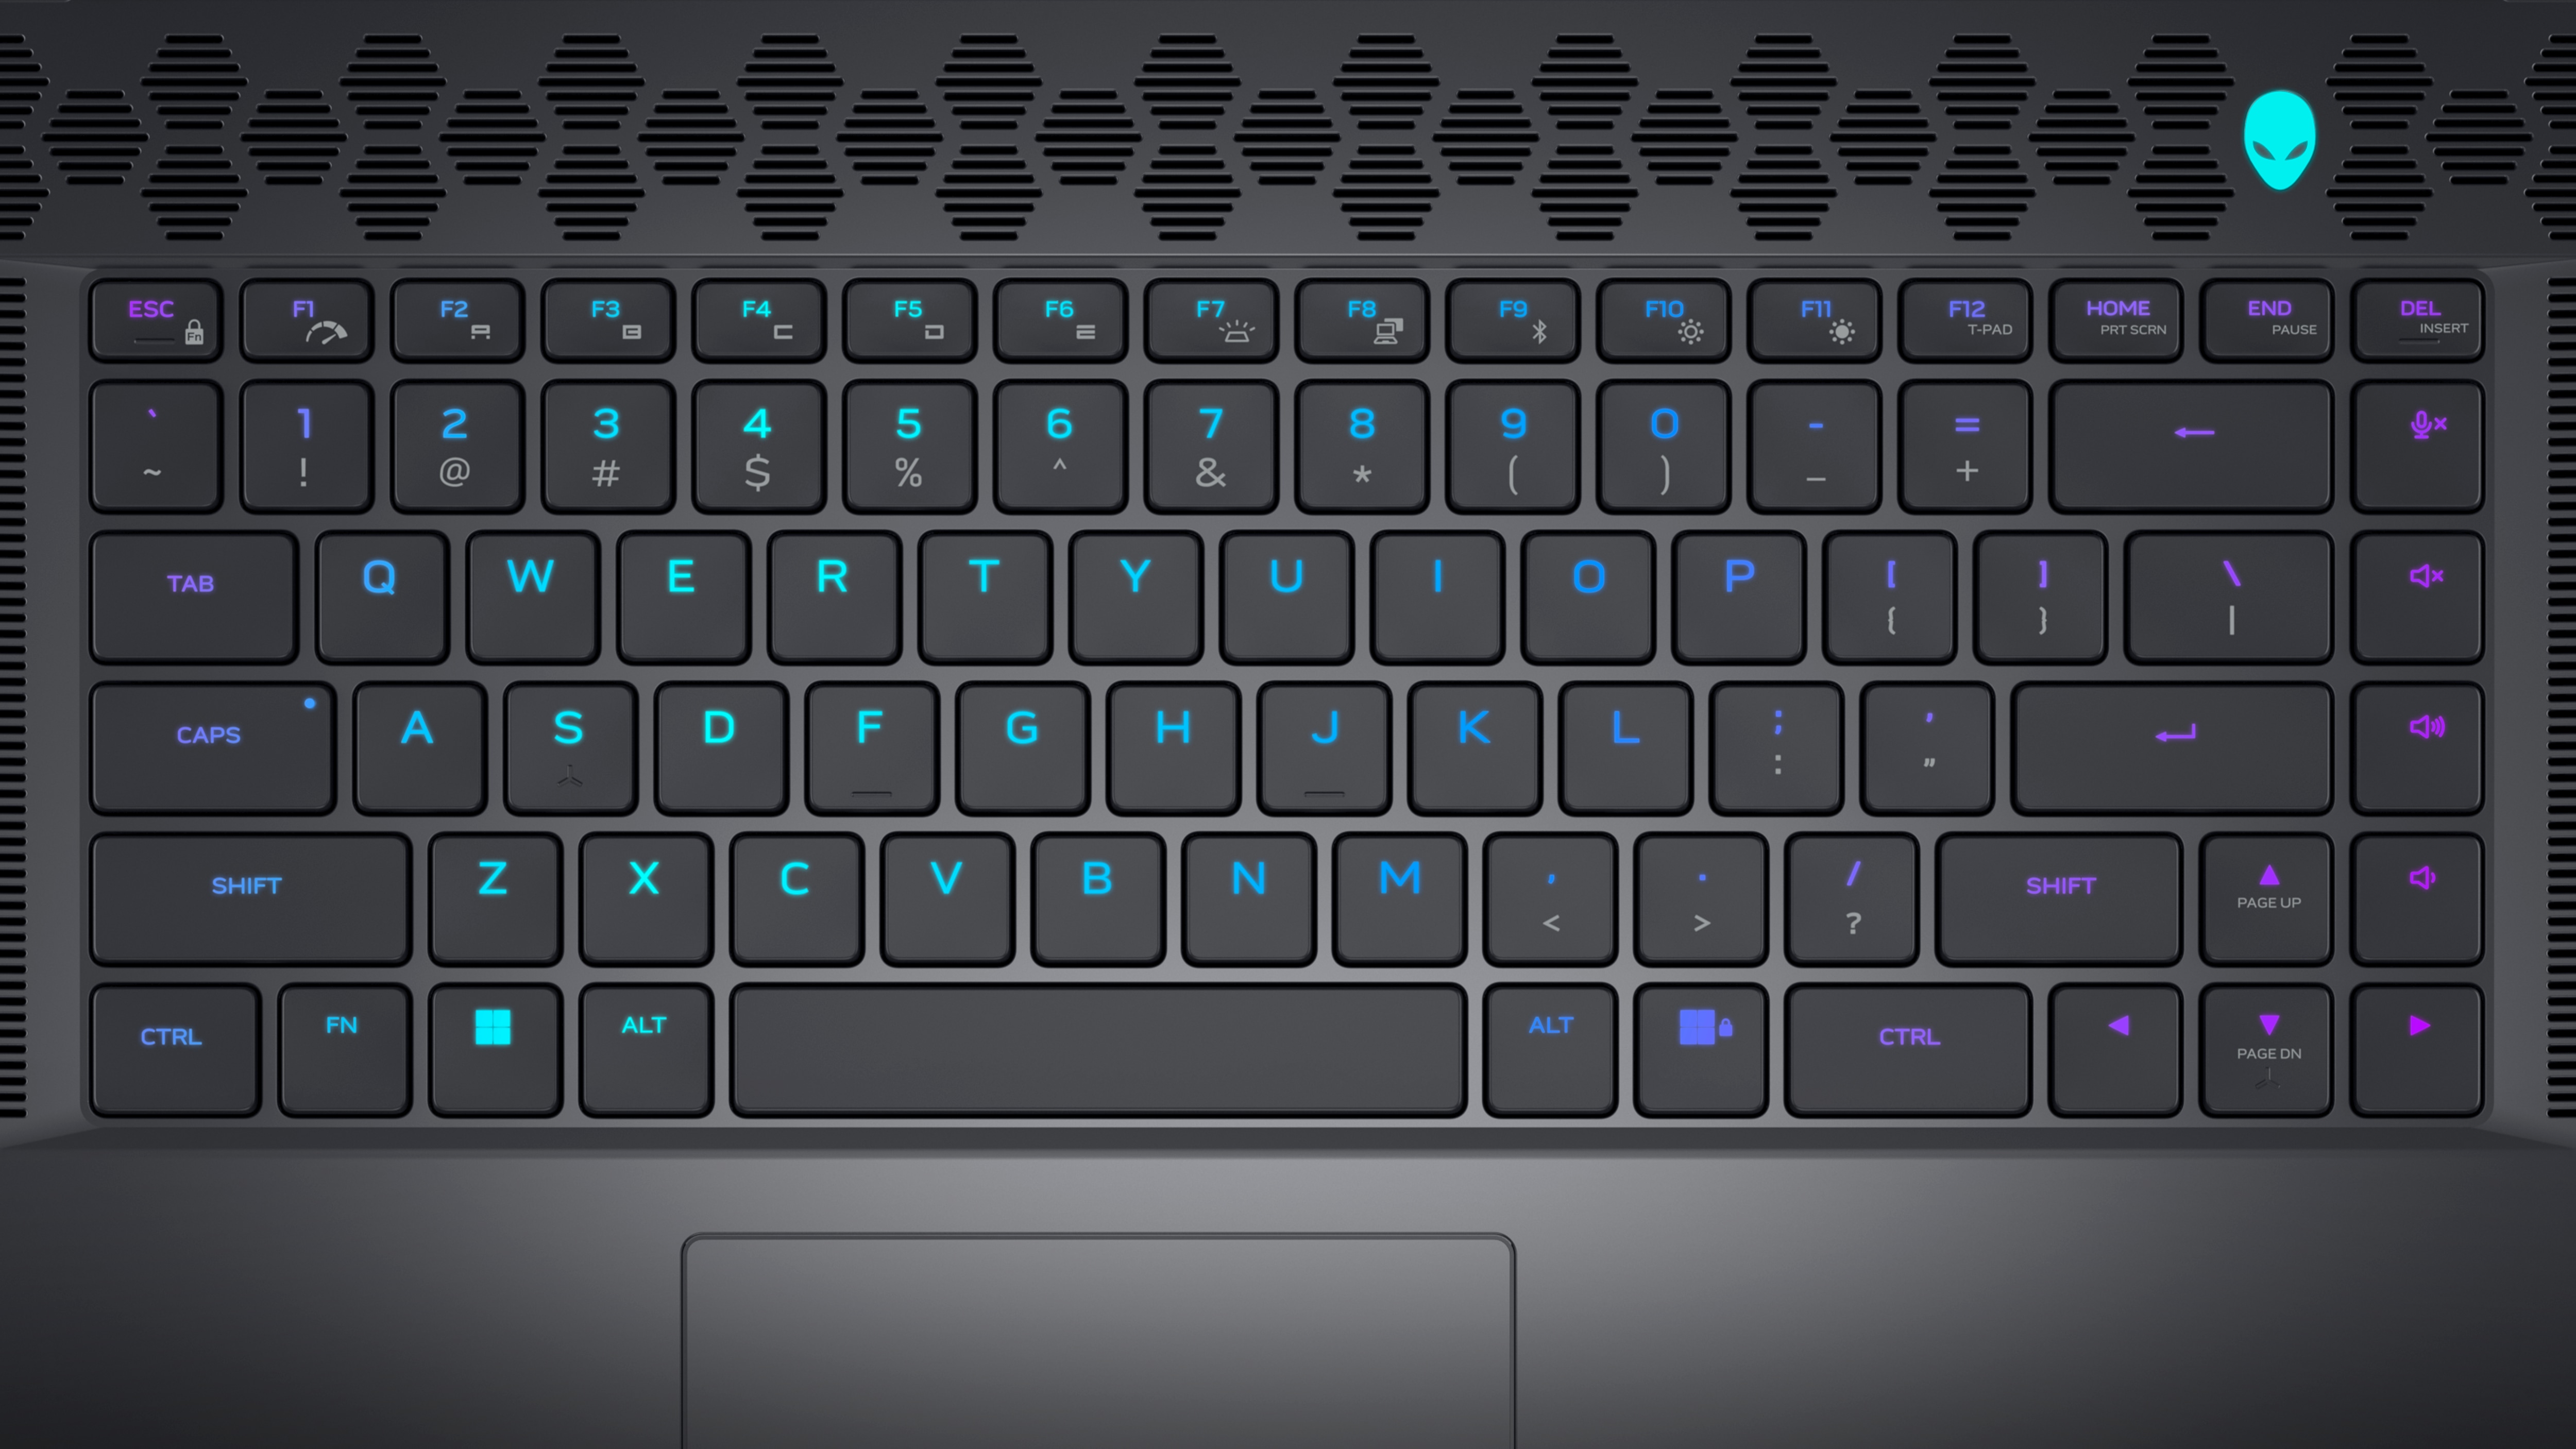 Bild der Tastatur des Dell Alienware x15 R2-Gaminglaptops mit eingeschalteter Beleuchtung und dem Alienware Logo auf der rechten Seite des Produkts.